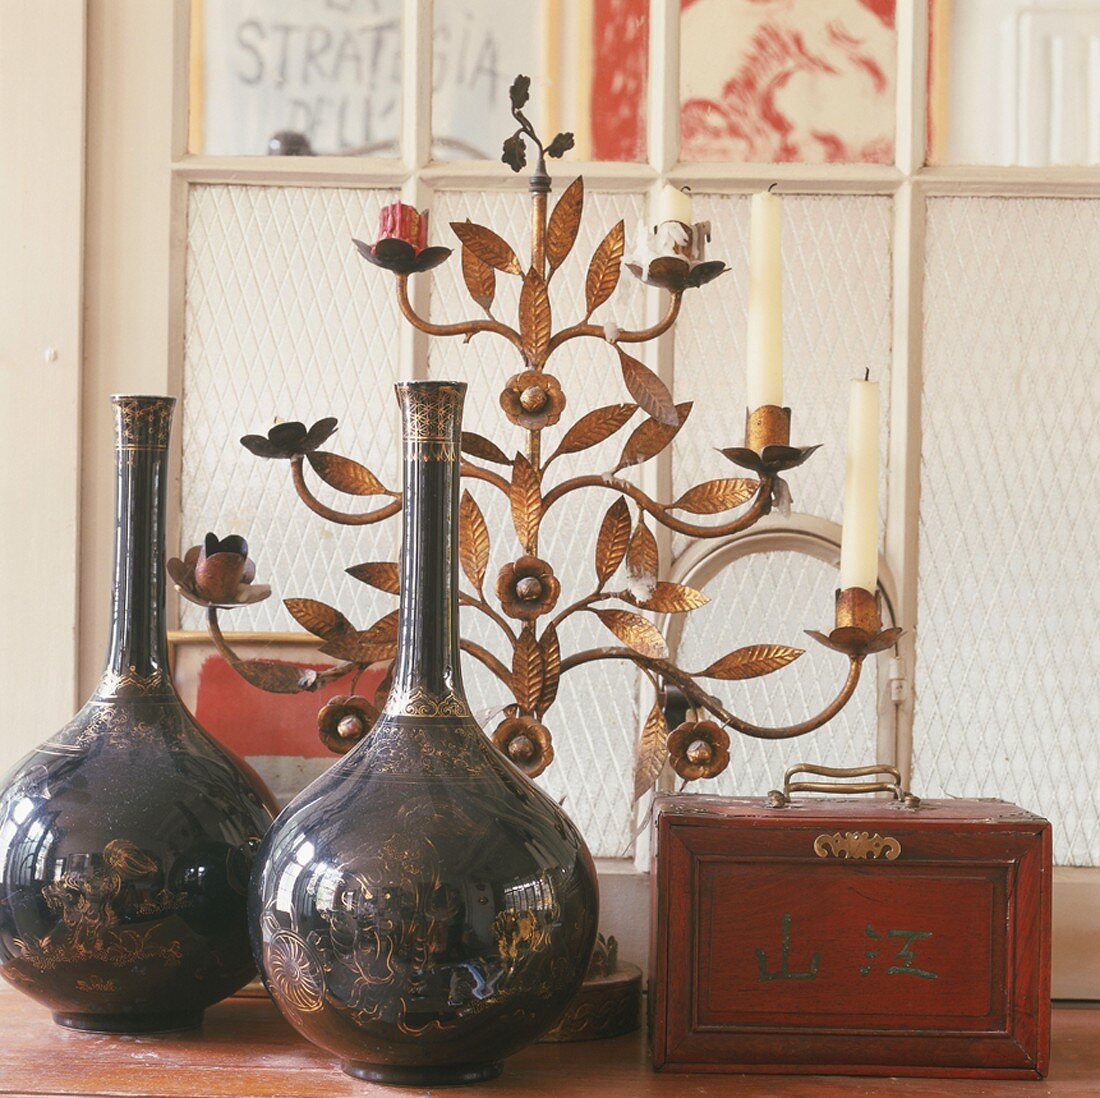 Porzellanvasen, Holzkästchen und floraler Kerzenständer aus Bronze vor einem Sprossenfenster